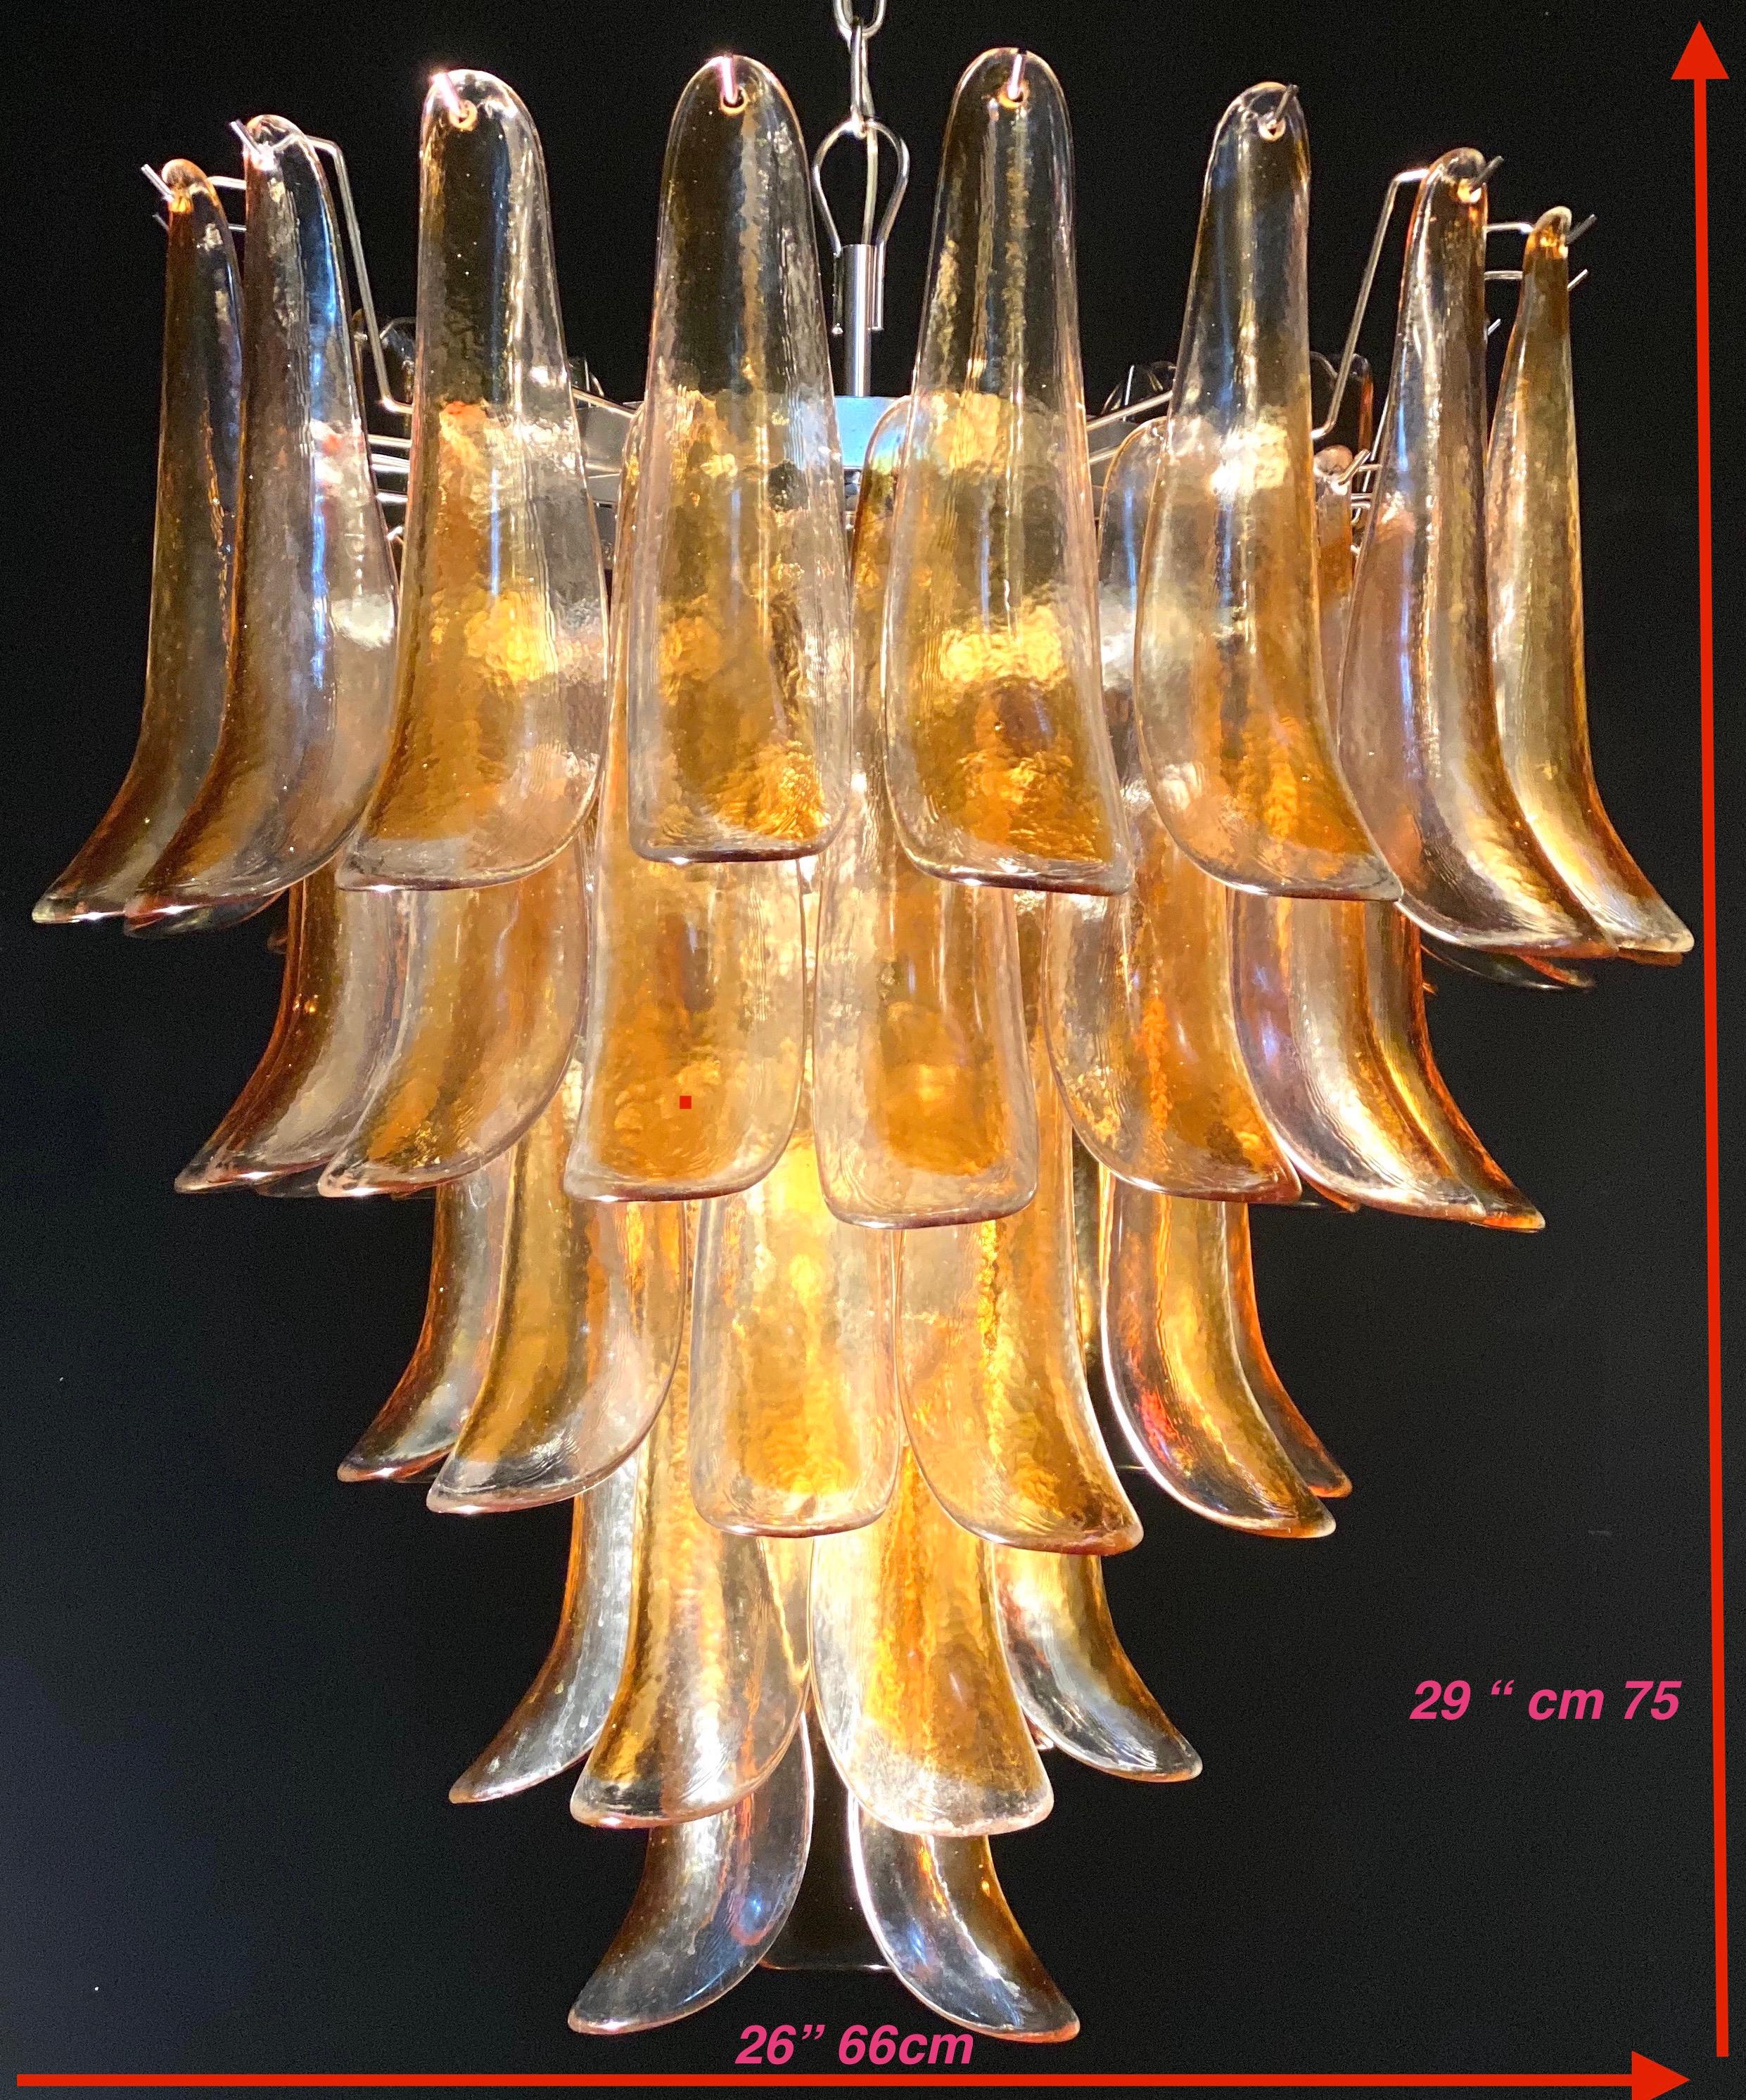 Lustre italien vintage de Murano composé de 52 pétales en verre ambré transparent soutenus par une armature chromée.
La couleur claire et ambrée des verres crée un fabuleux effet de lumière chaude.
Période : 1970s
Le prix est pour 1 article